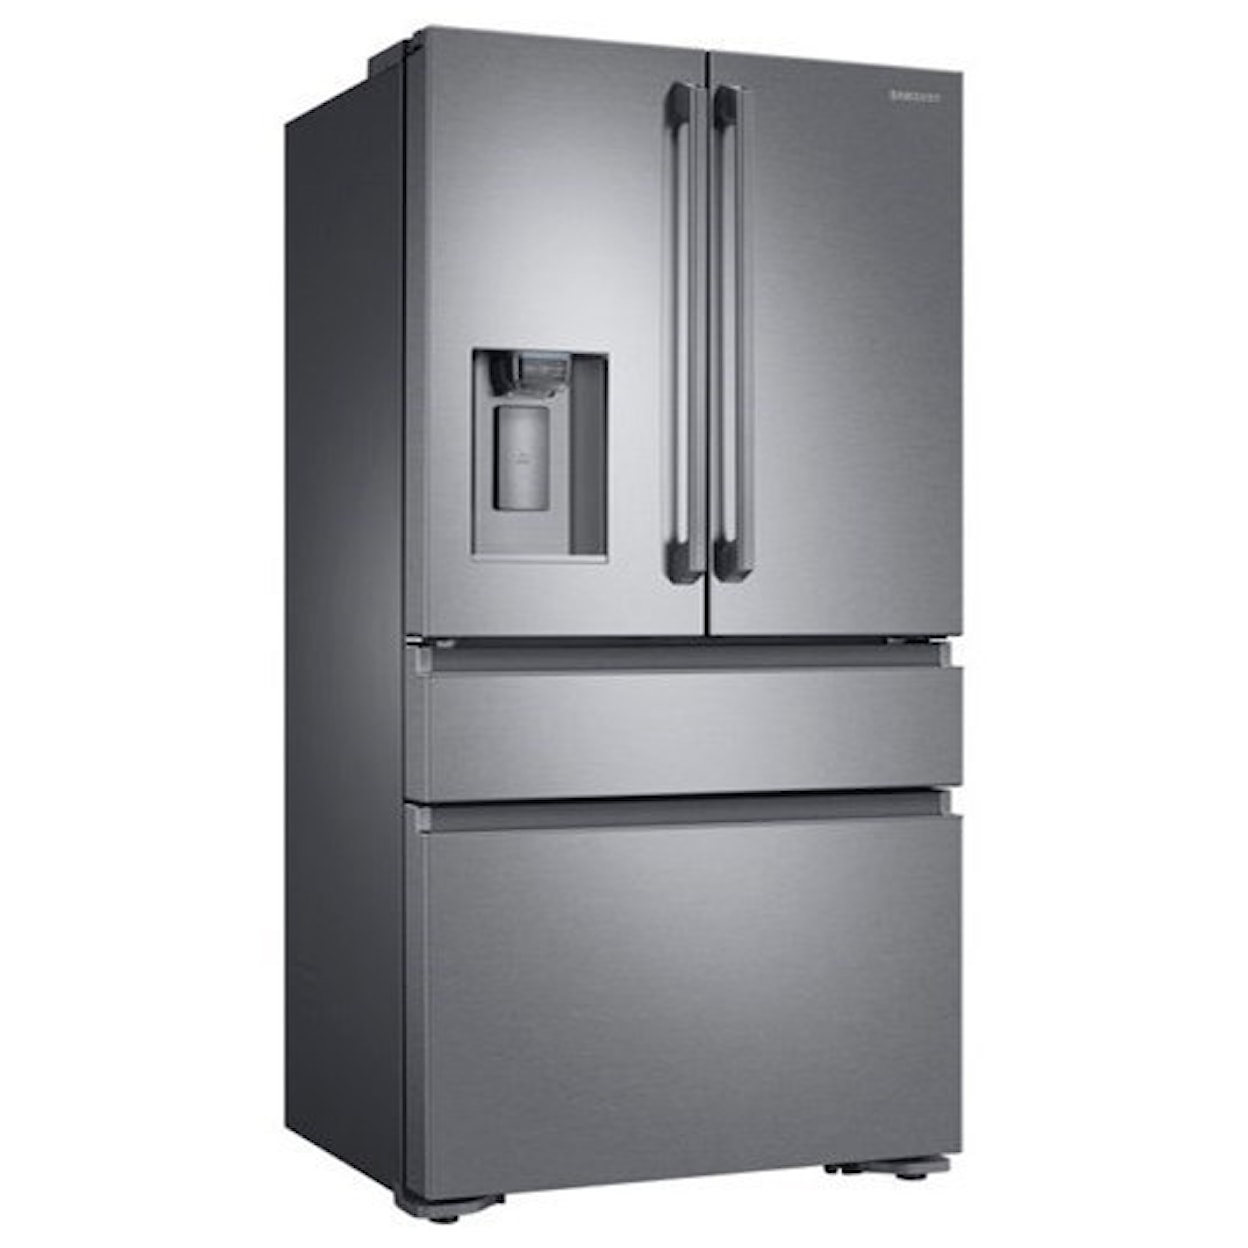 Samsung Appliances French Door Refrigerators 23 Cu.Ft. Counter Depth 4-Door Refrigerator